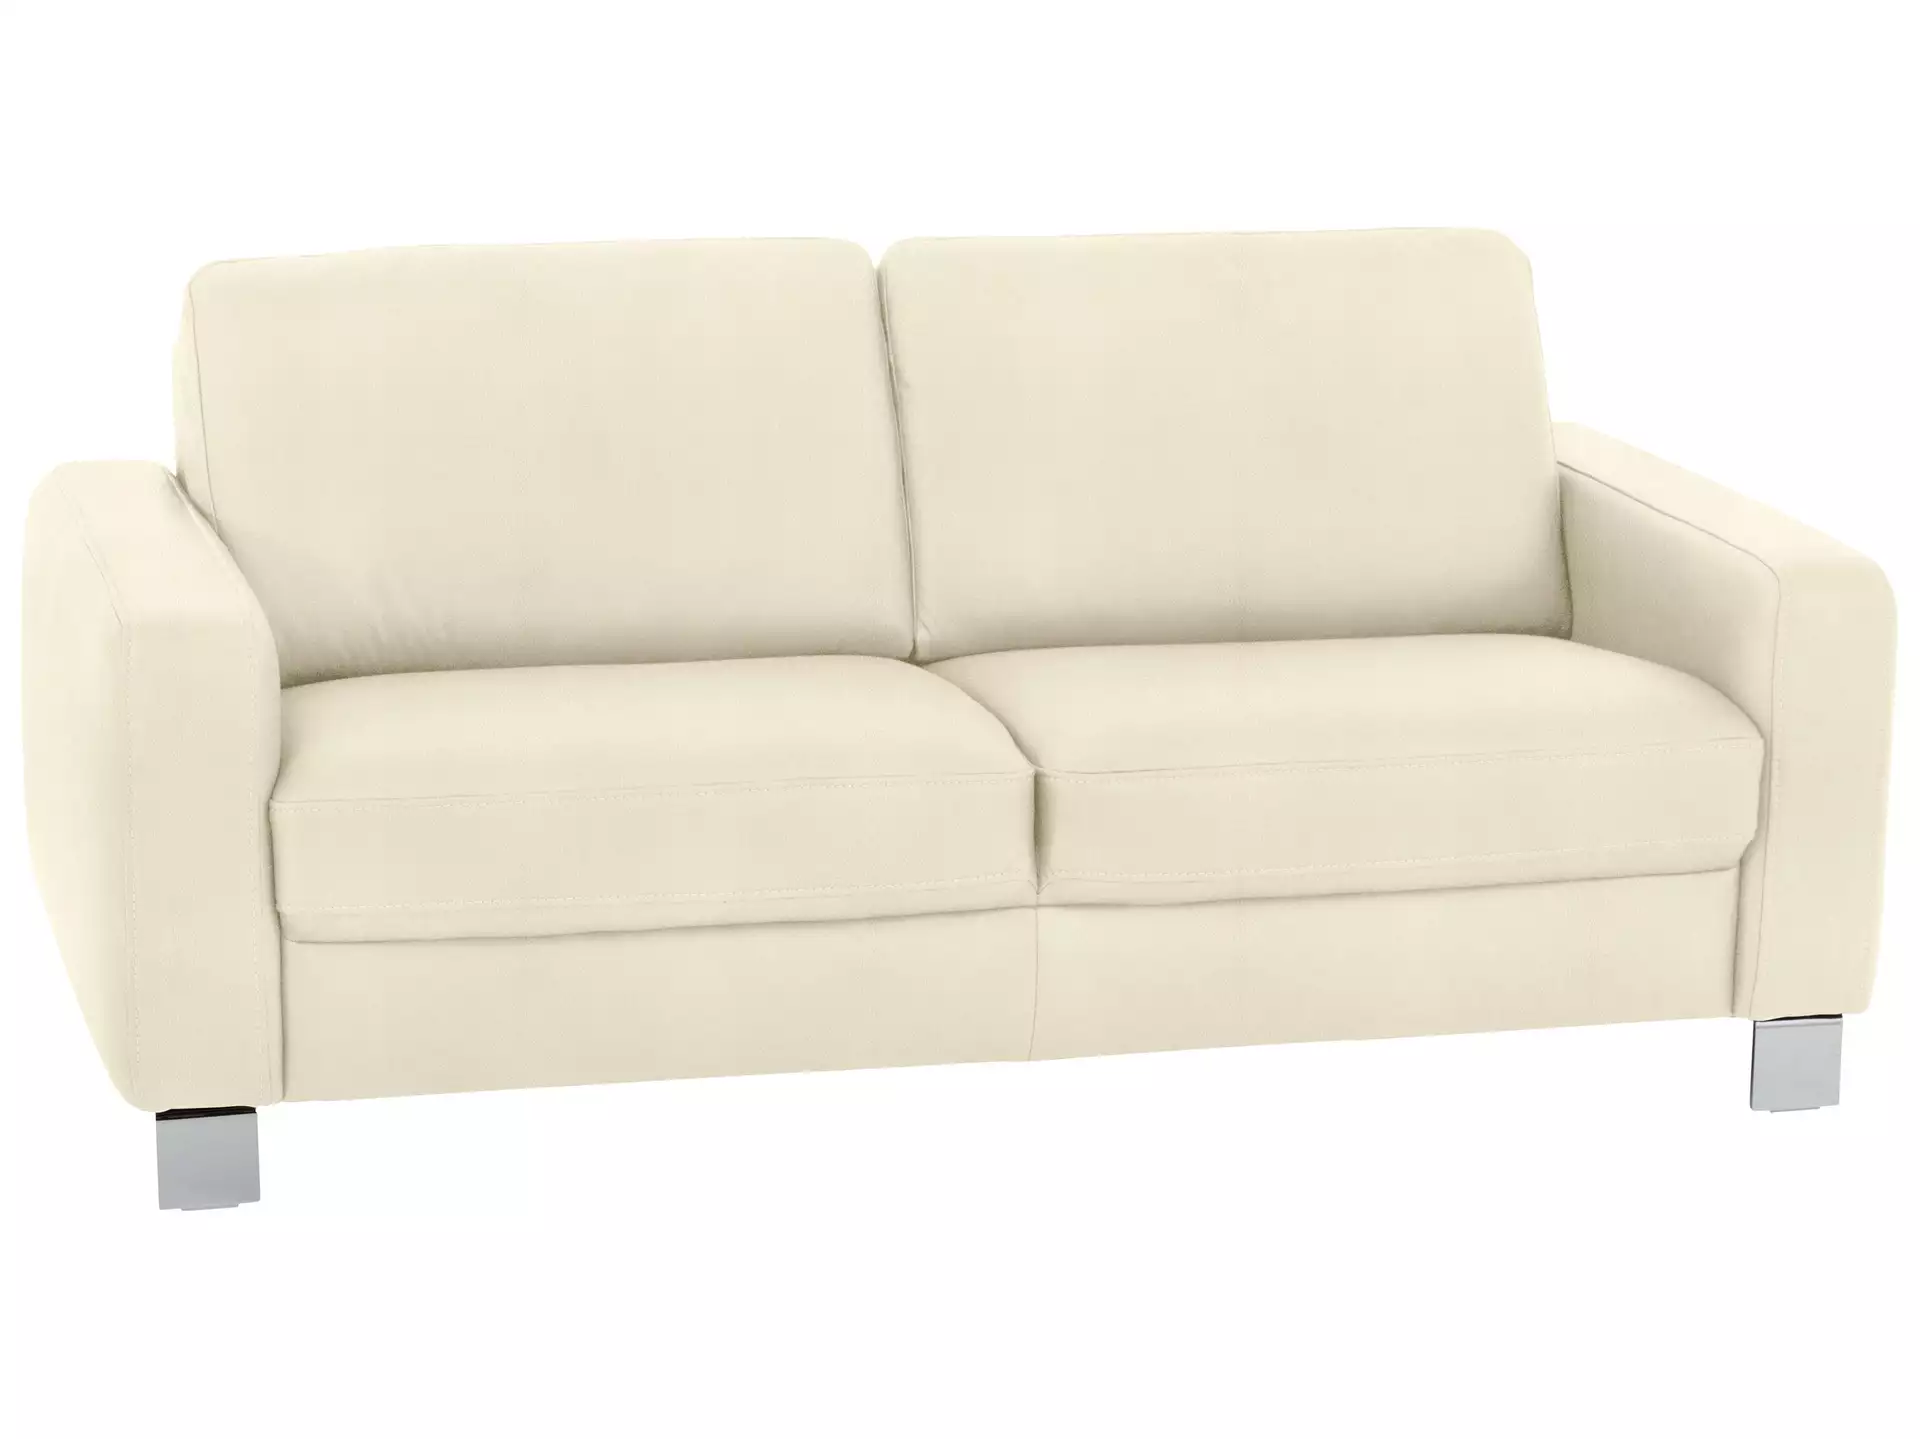 Sofa Shetland Basic B: 188 cm Polipol / Farbe: Natur / Material: Leder Basic